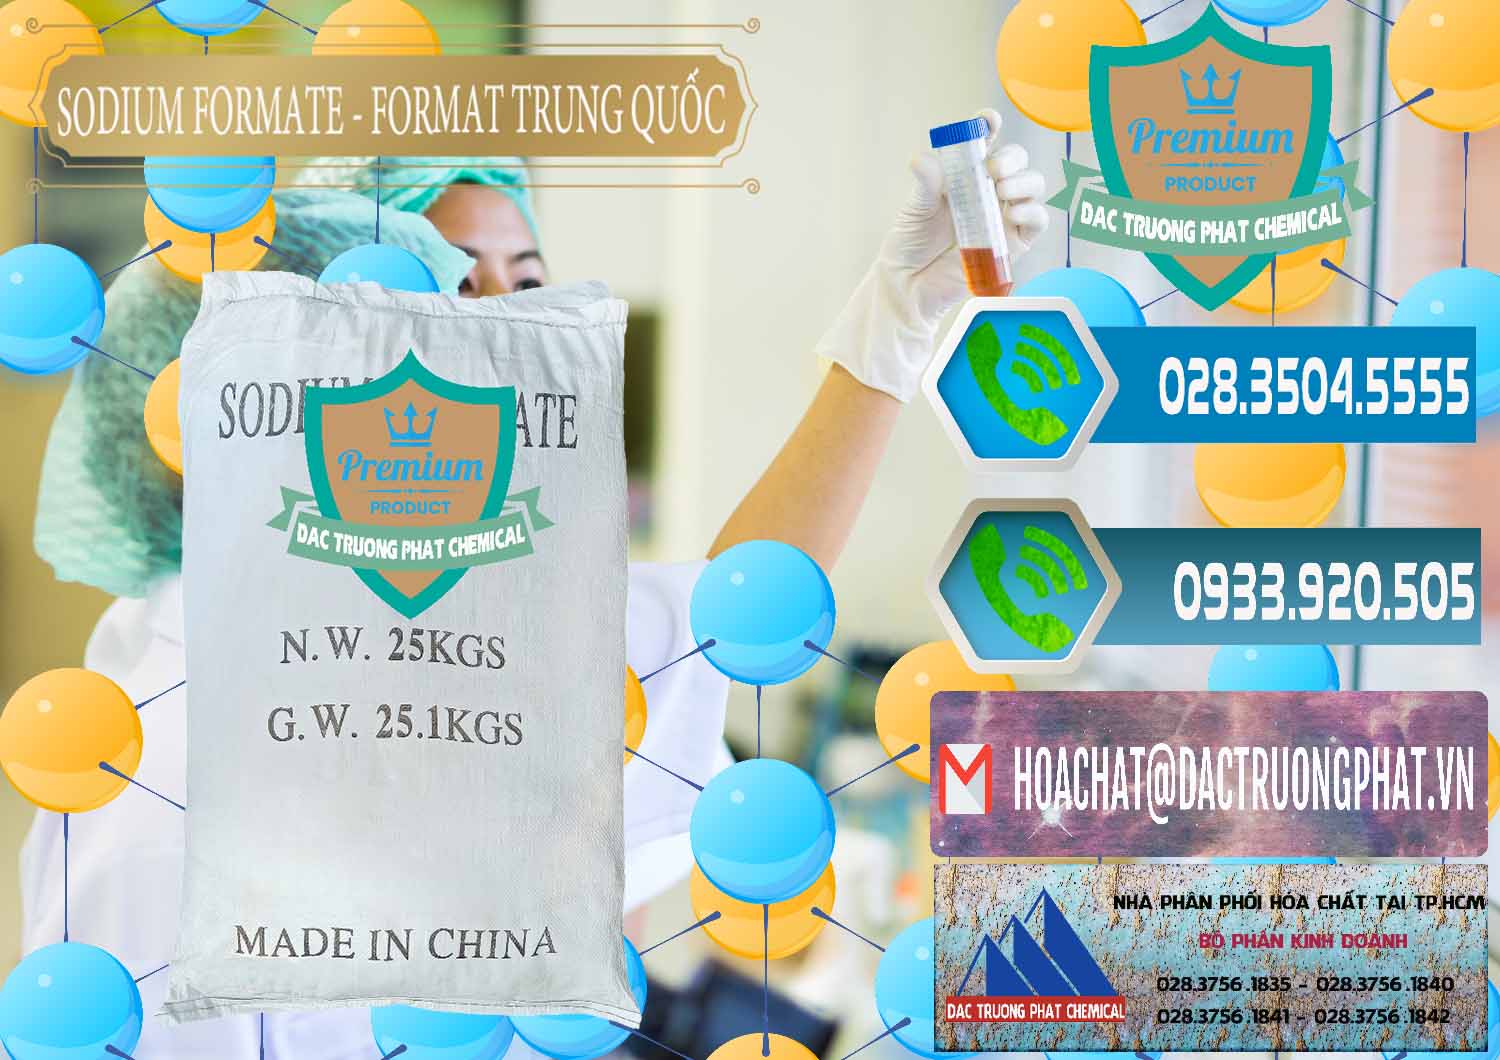 Nơi cung ứng và bán Sodium Formate - Natri Format Trung Quốc China - 0142 - Cung cấp và phân phối hóa chất tại TP.HCM - congtyhoachat.net